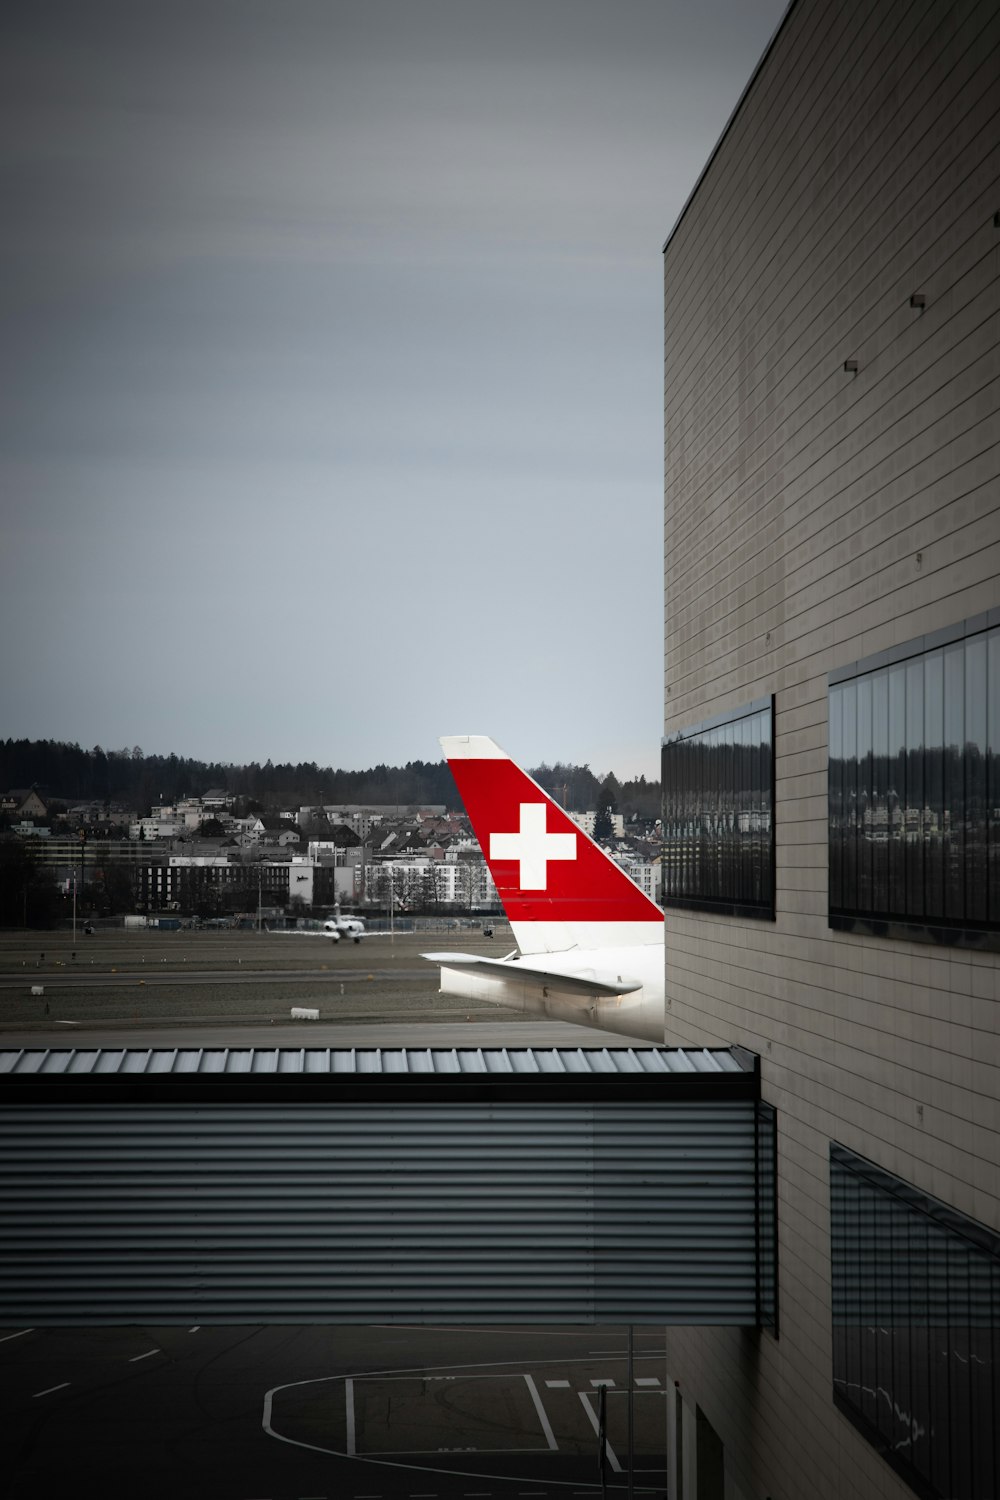 Avión blanco y rojo en el aeropuerto durante el día